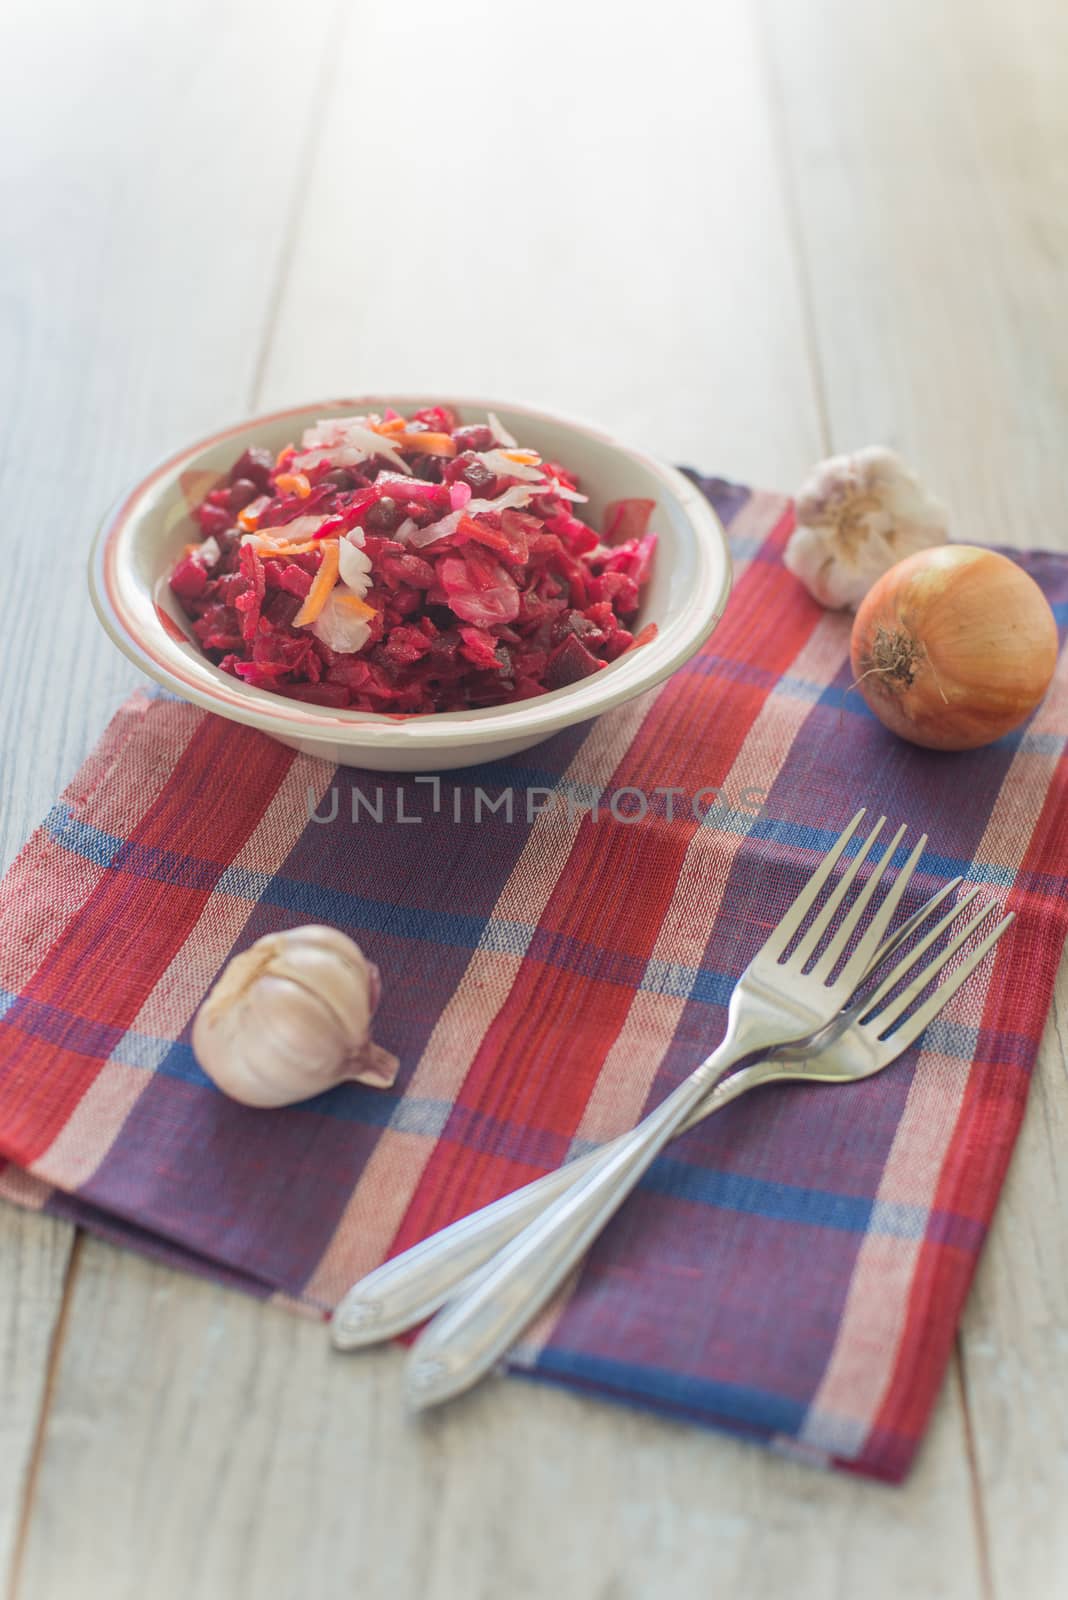 Russian salad and garlic by Linaga